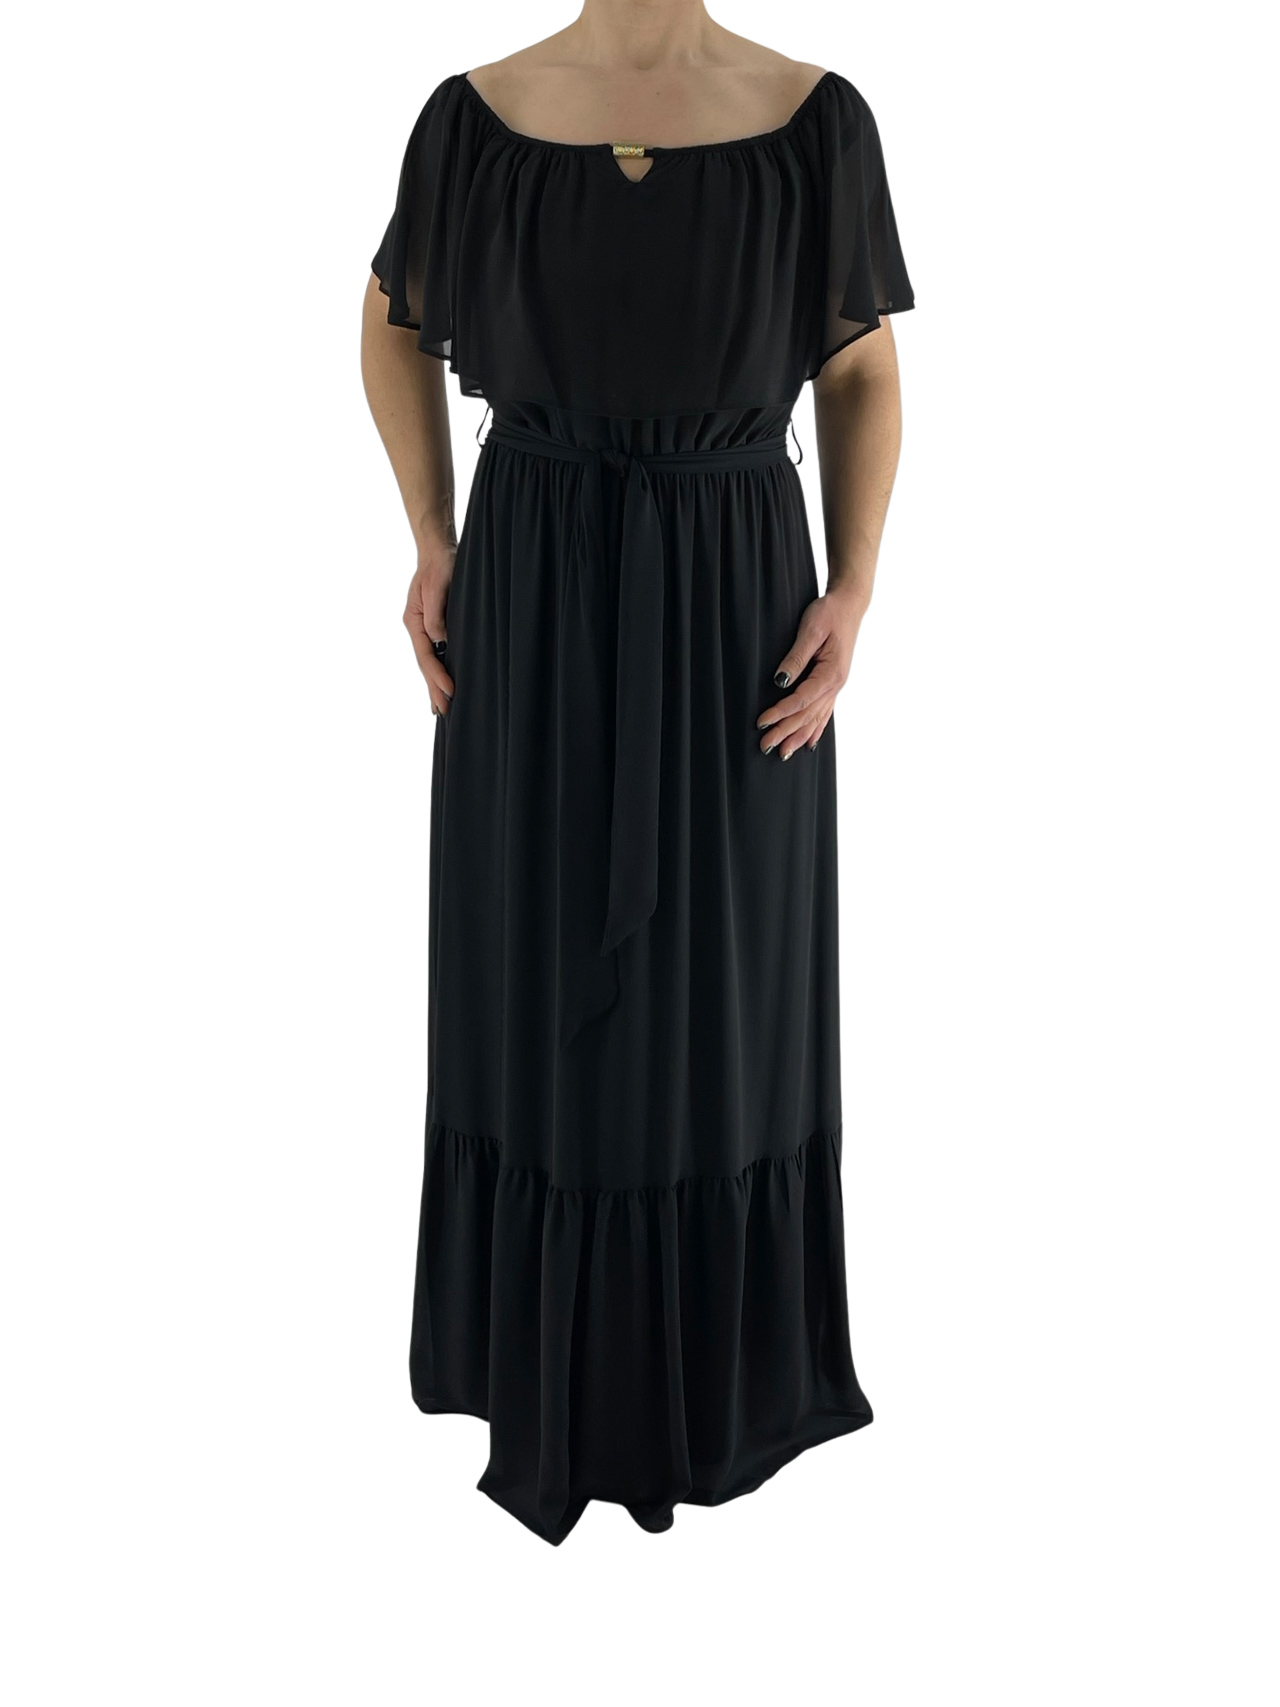 Φόρεμα maxi μαύρο κωδ. 9379 μπροστινή όψη